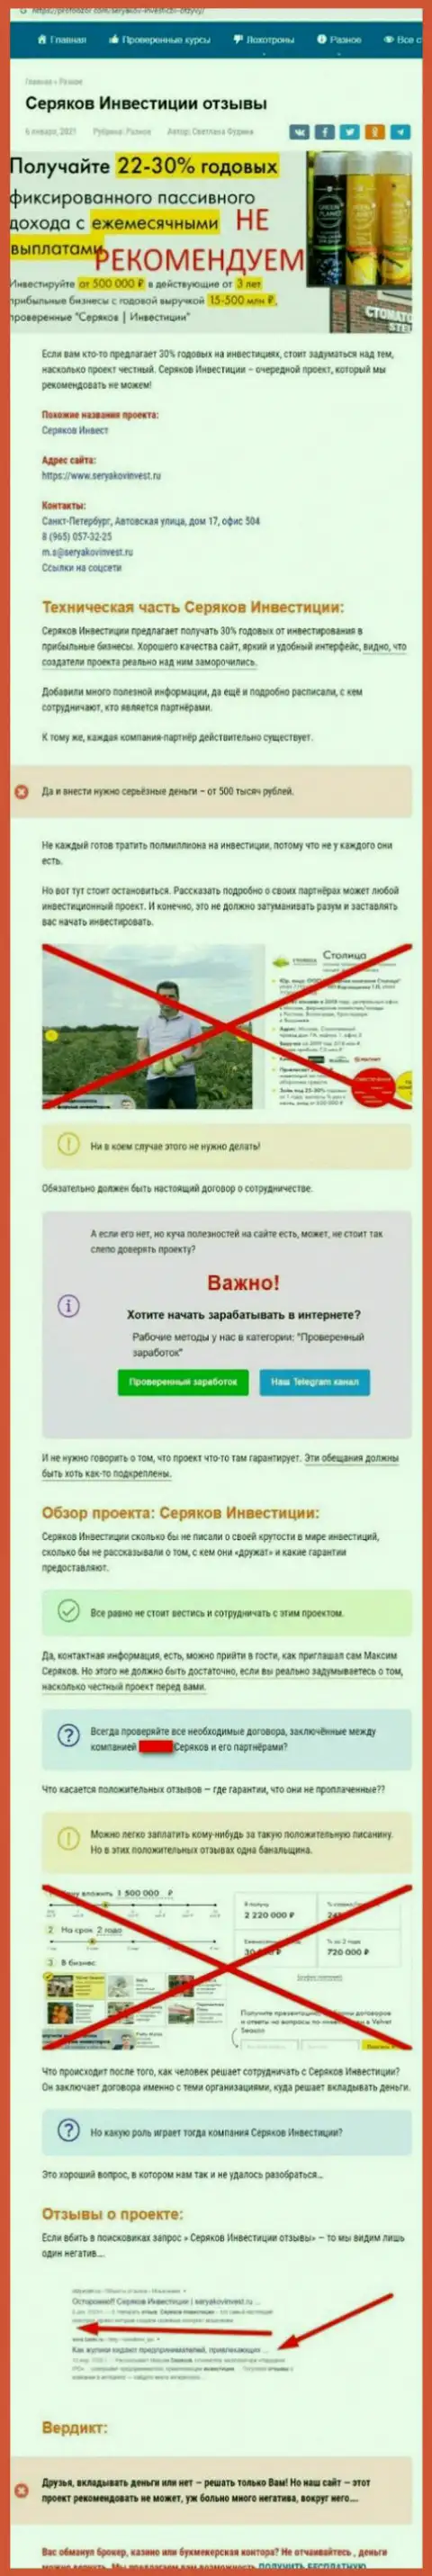 Уловки от организации SeryakovInvest Ru, обзор неправомерных деяний